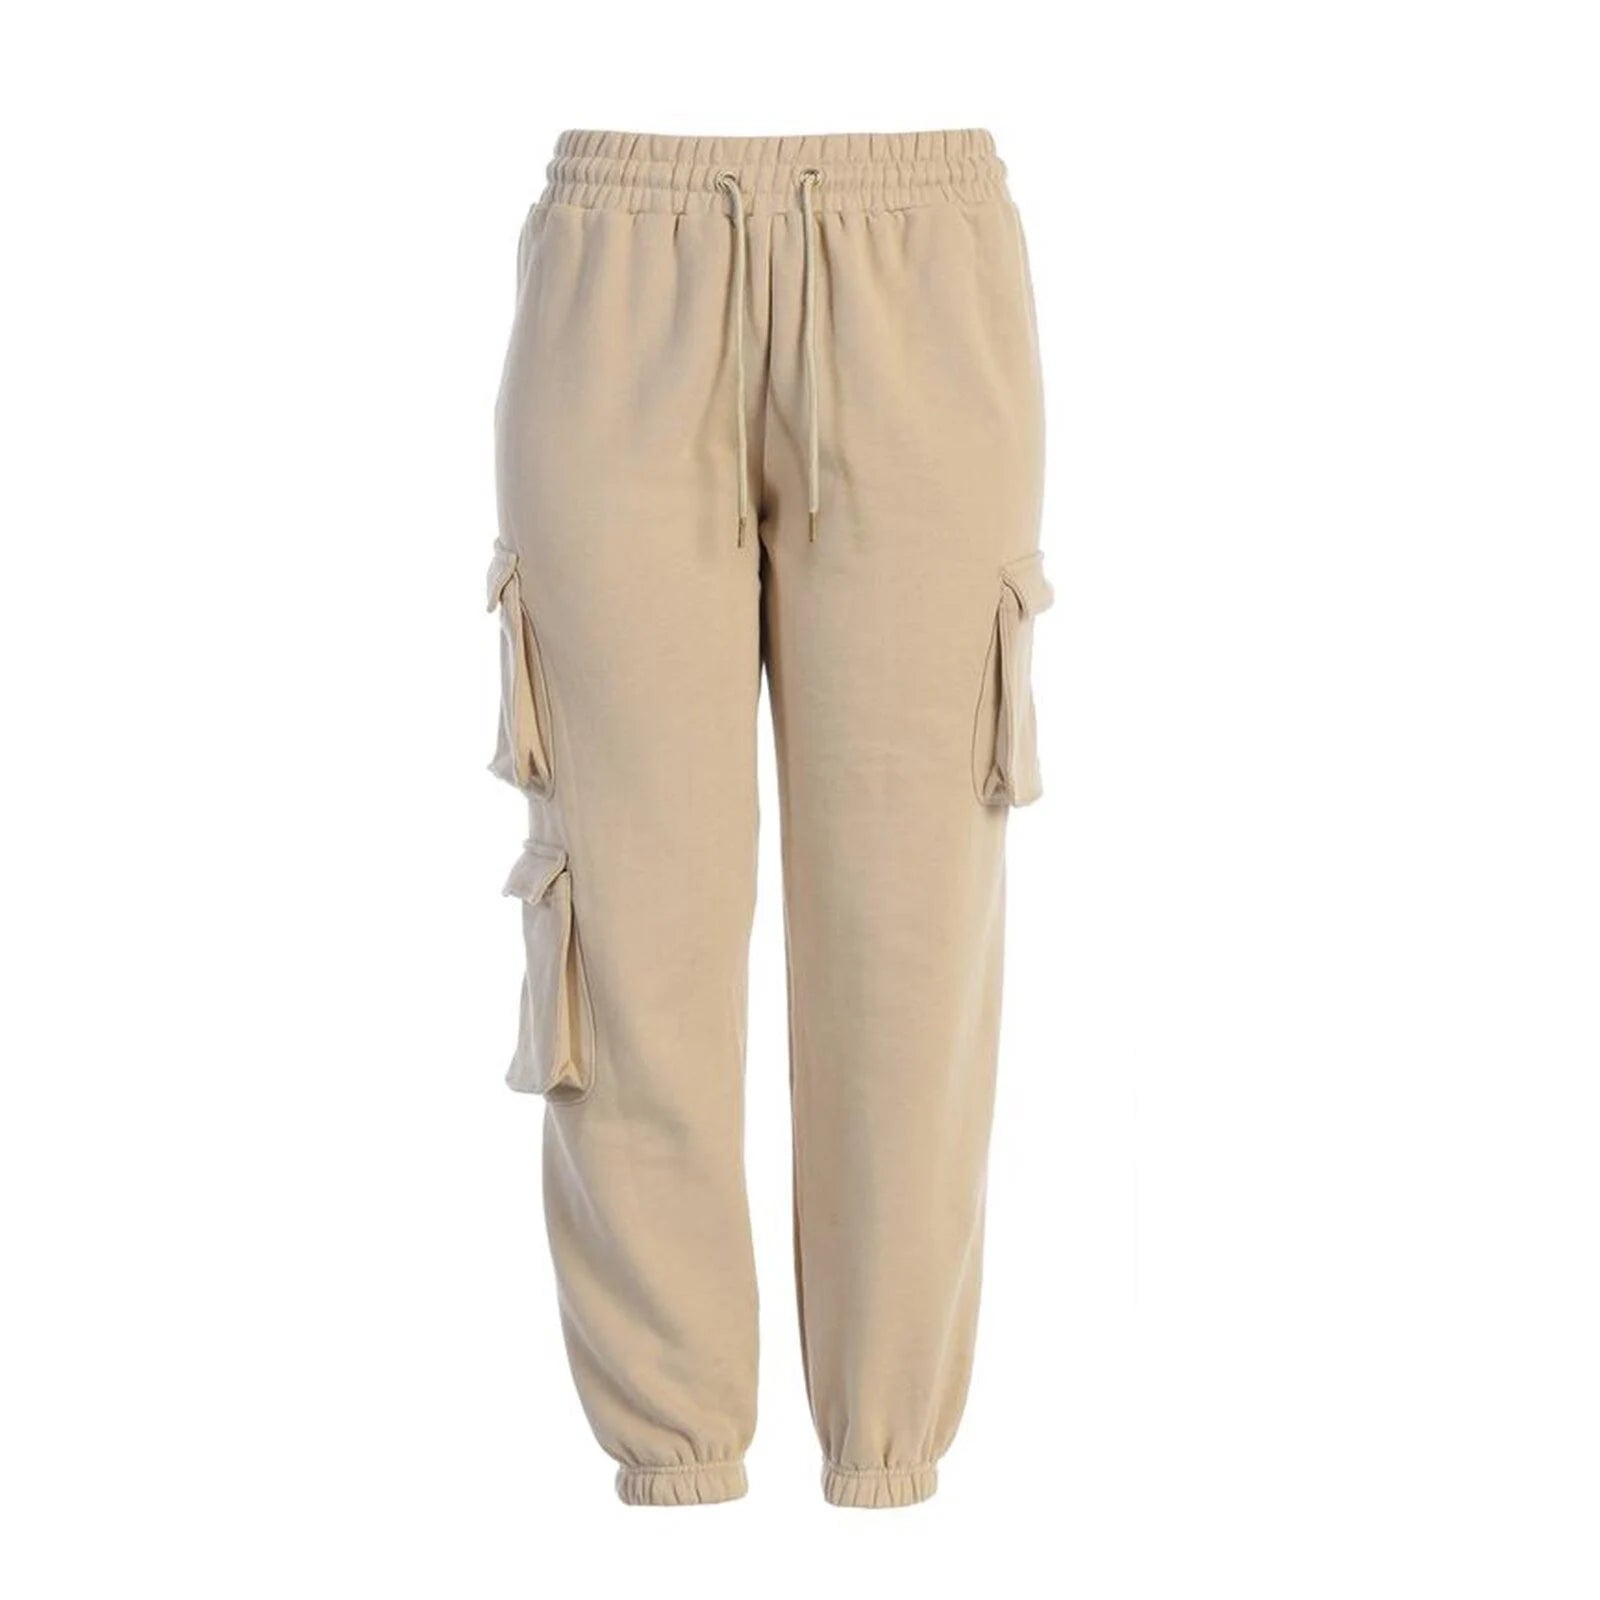  Vintage Patchwork Joggers Sweatpants Woman Trousers -5  colors